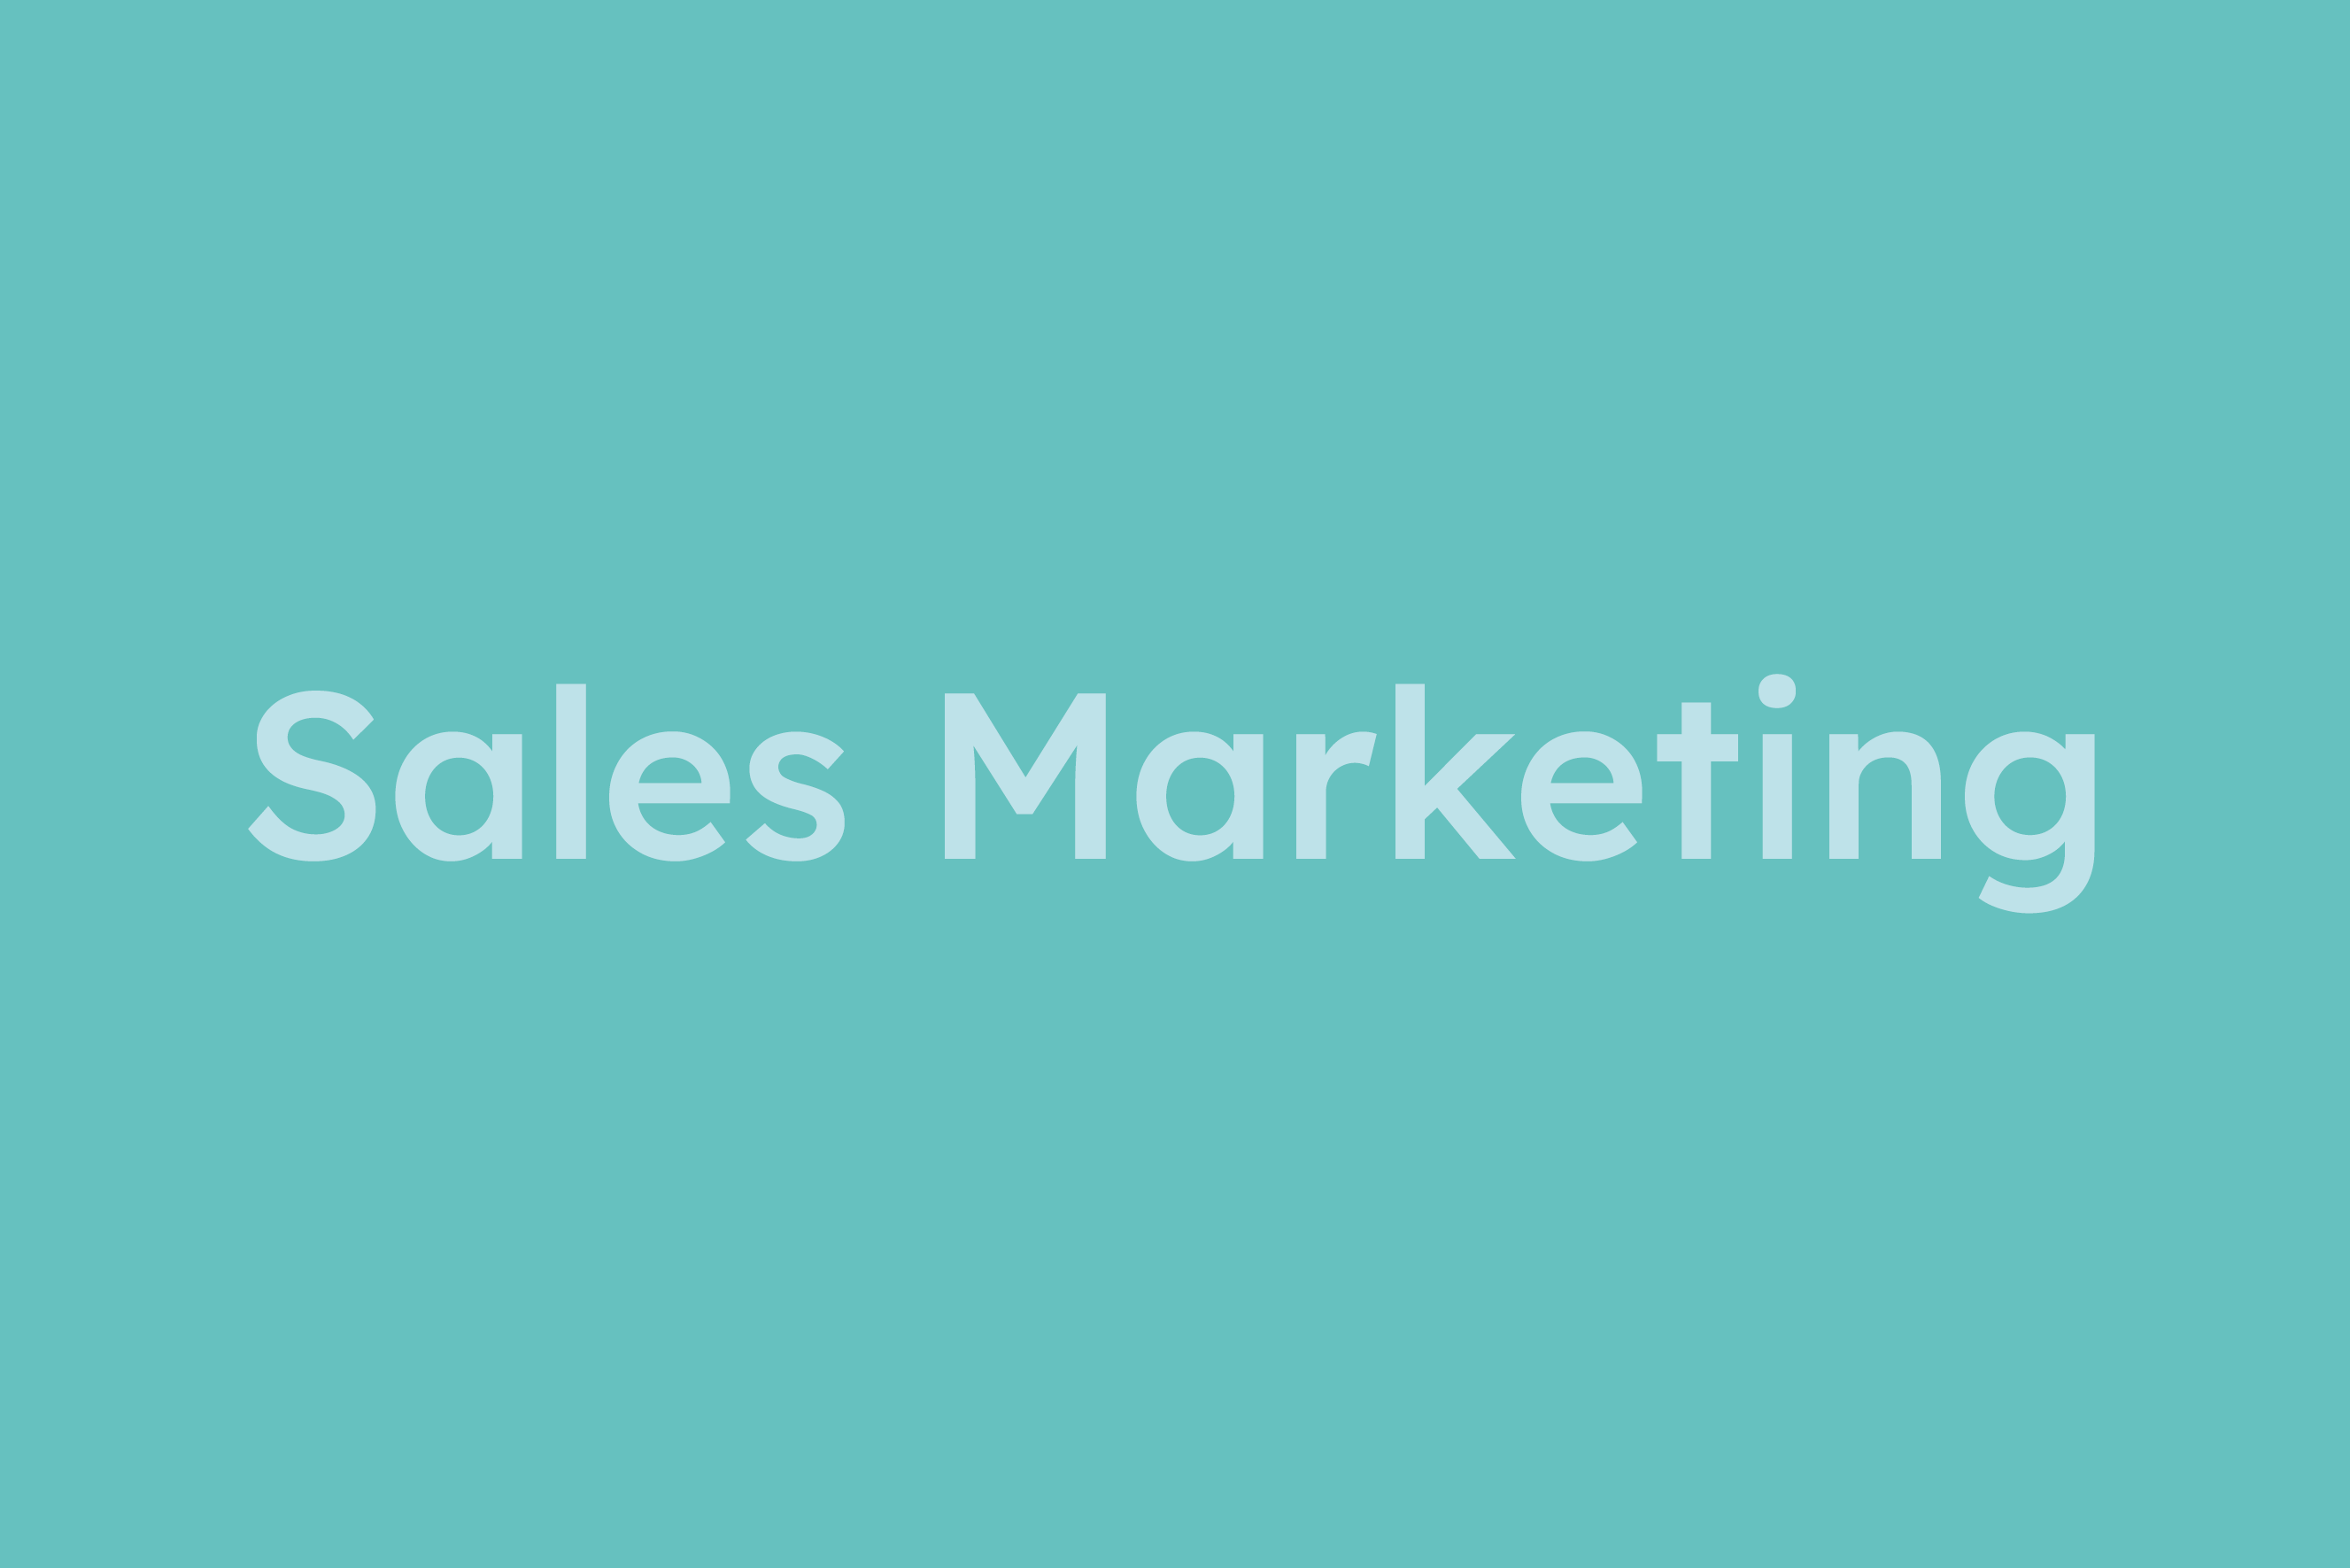 Sales Marketing erklärt im Glossar von Campaign